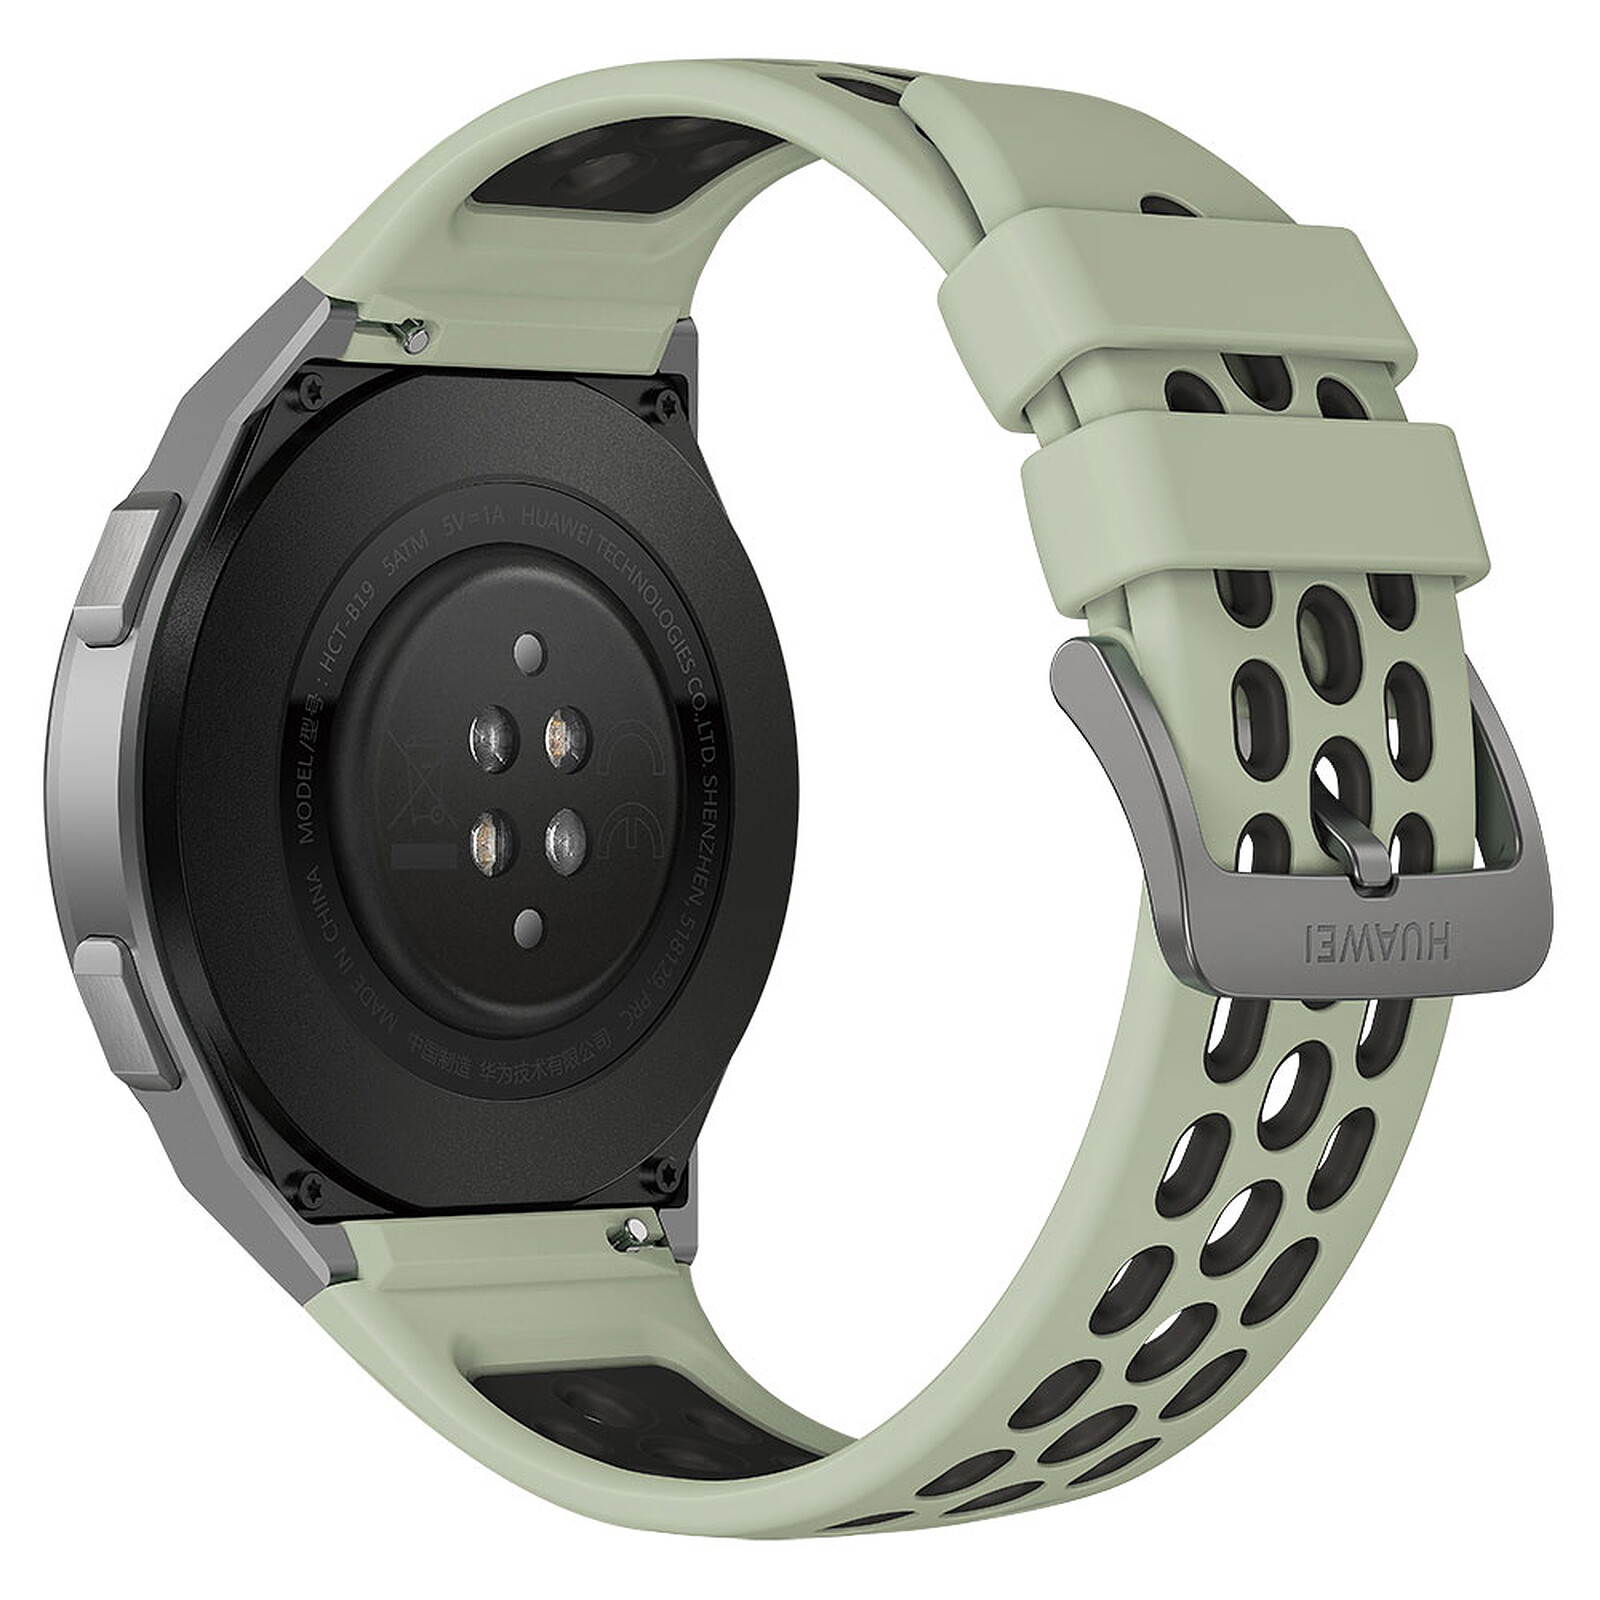 Huawei Watch GT 2e (Verde) - Smartwatch - LDLC